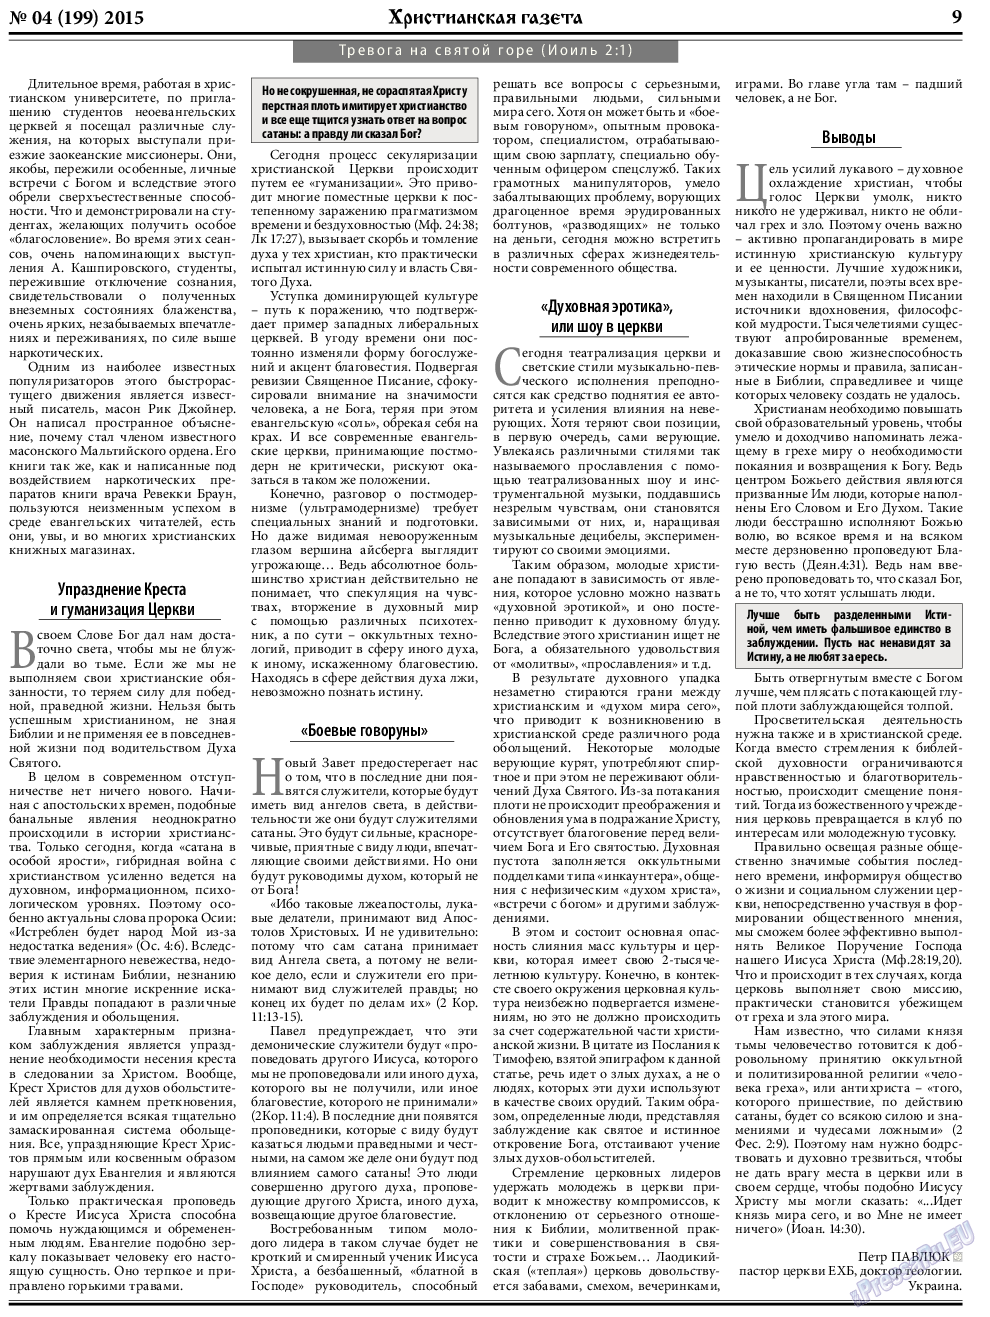 Христианская газета, газета. 2015 №4 стр.9